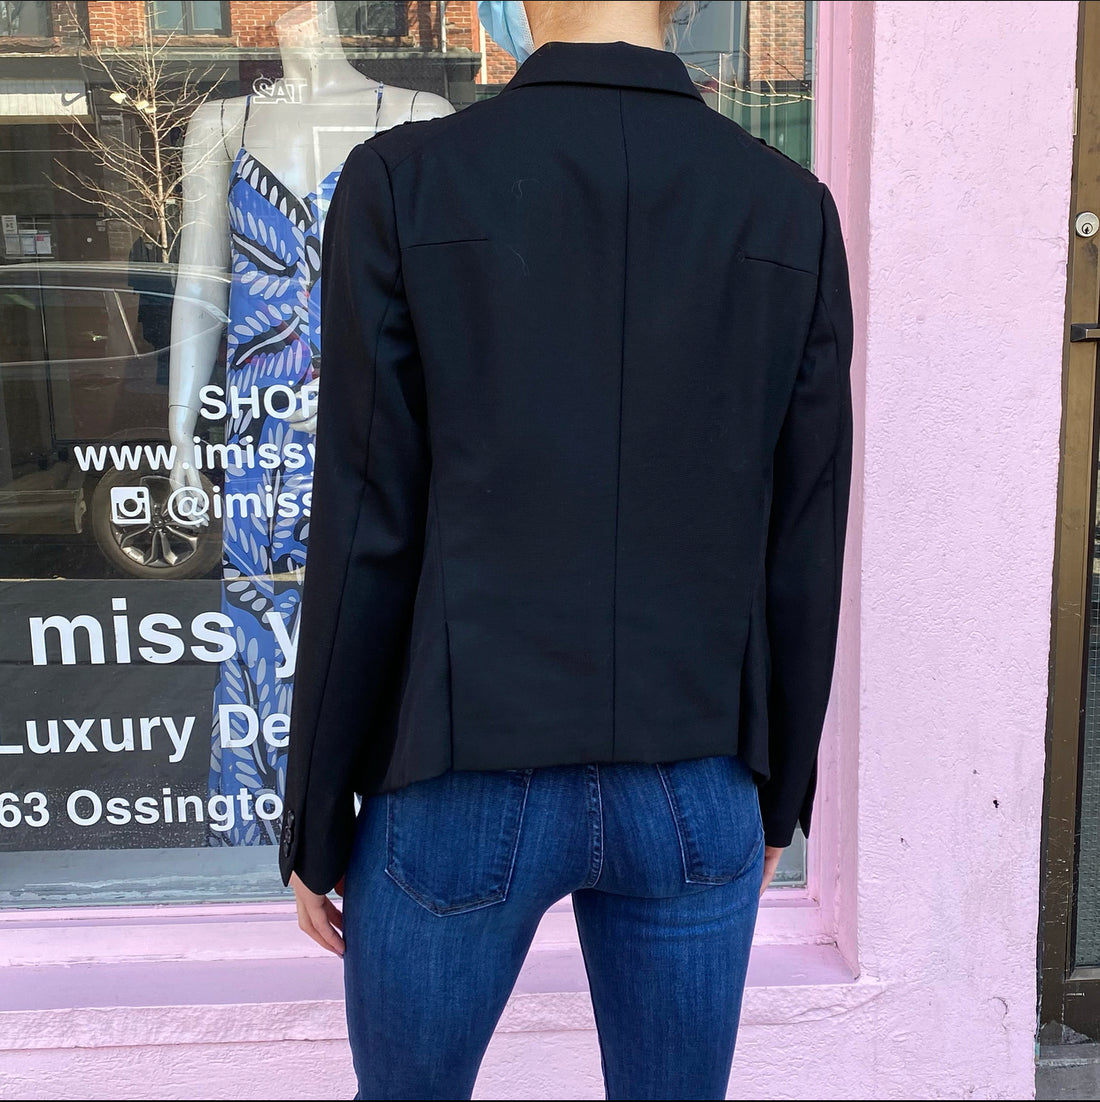 Noir Kei Ninomiya Black Lace Up Detail Jacket - M